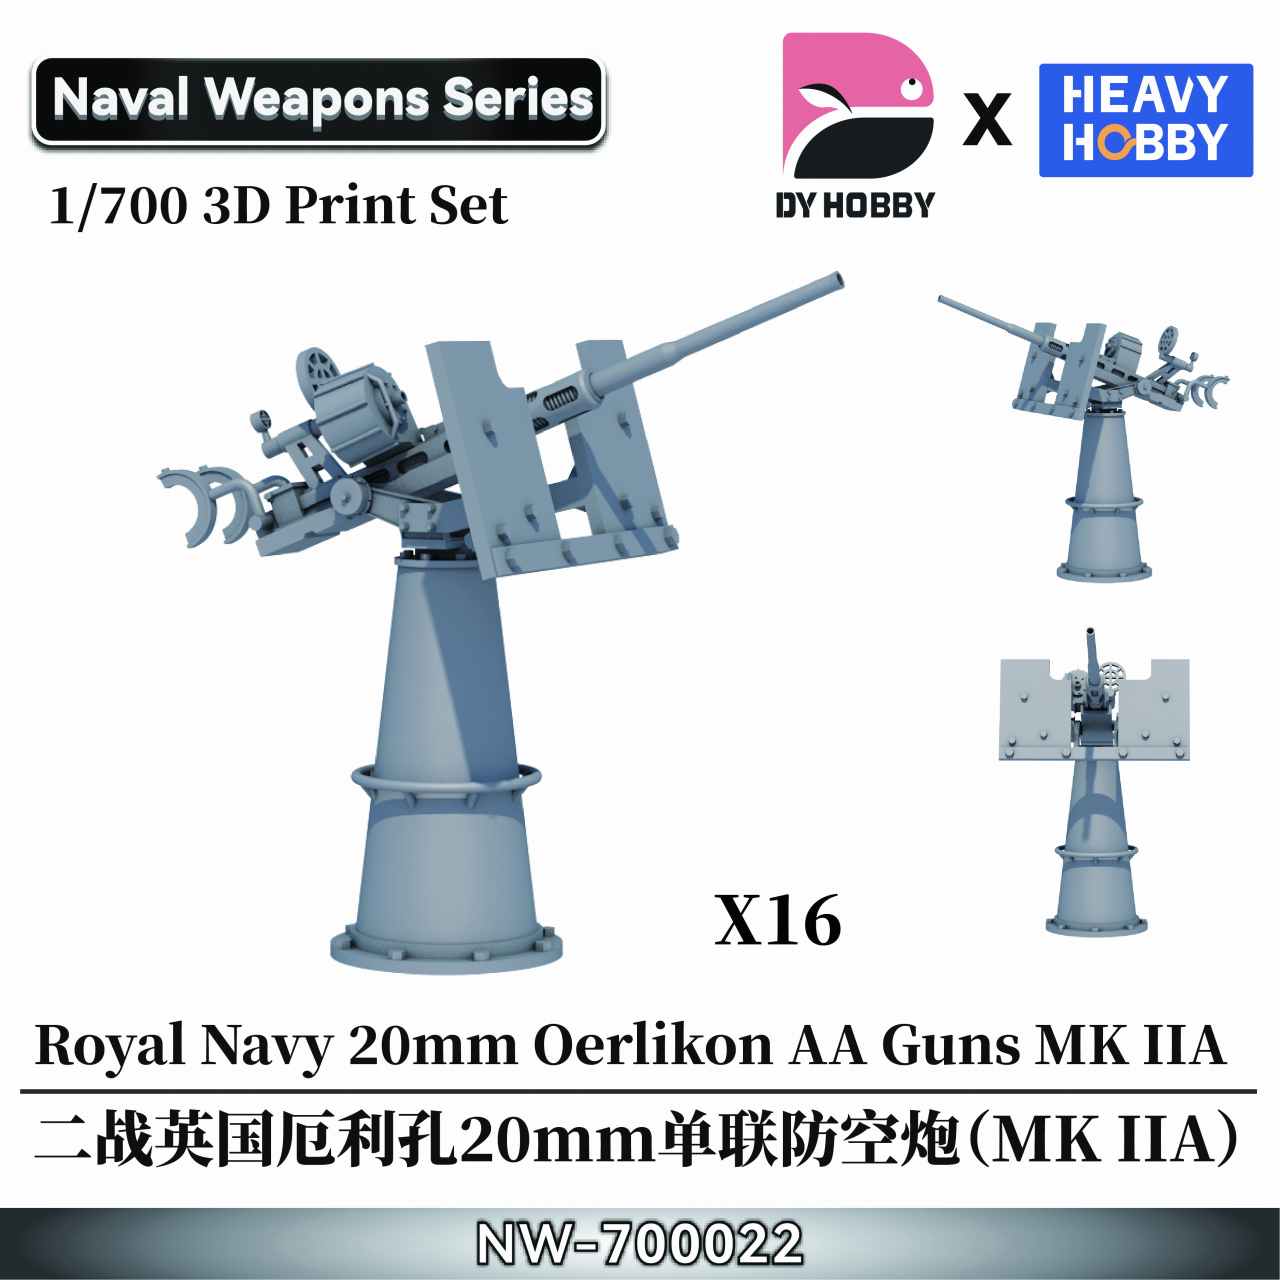 【新製品】NW-700022 1/700 WWII イギリス海軍 エリコン 20mm 単装機関砲 (MK IIA)